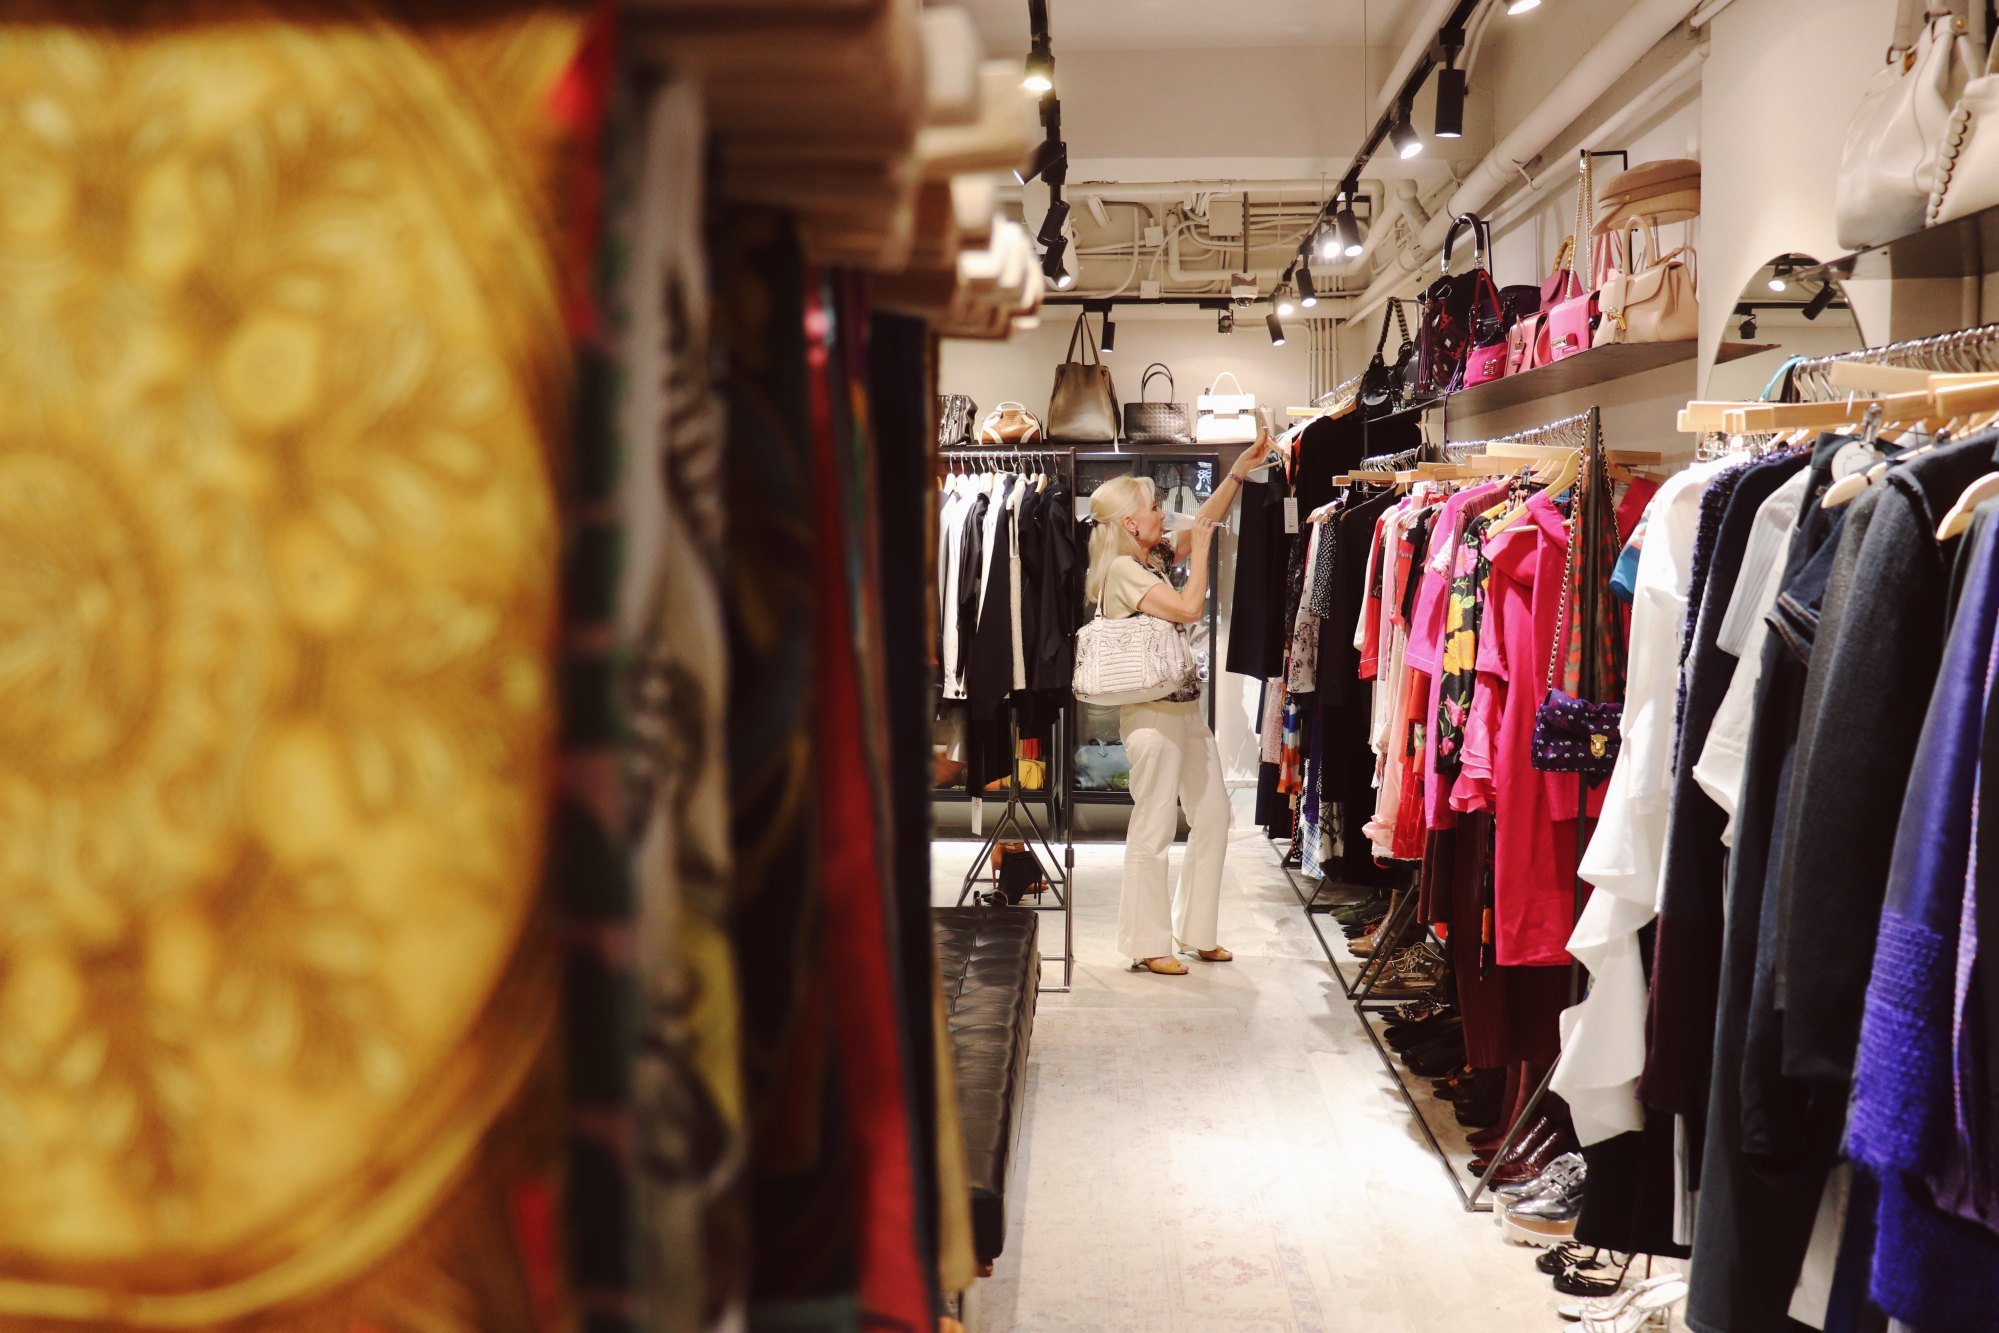 Tango Dresses, H&M Shoes, Louis Vuitton Purses, Thrift Store HK